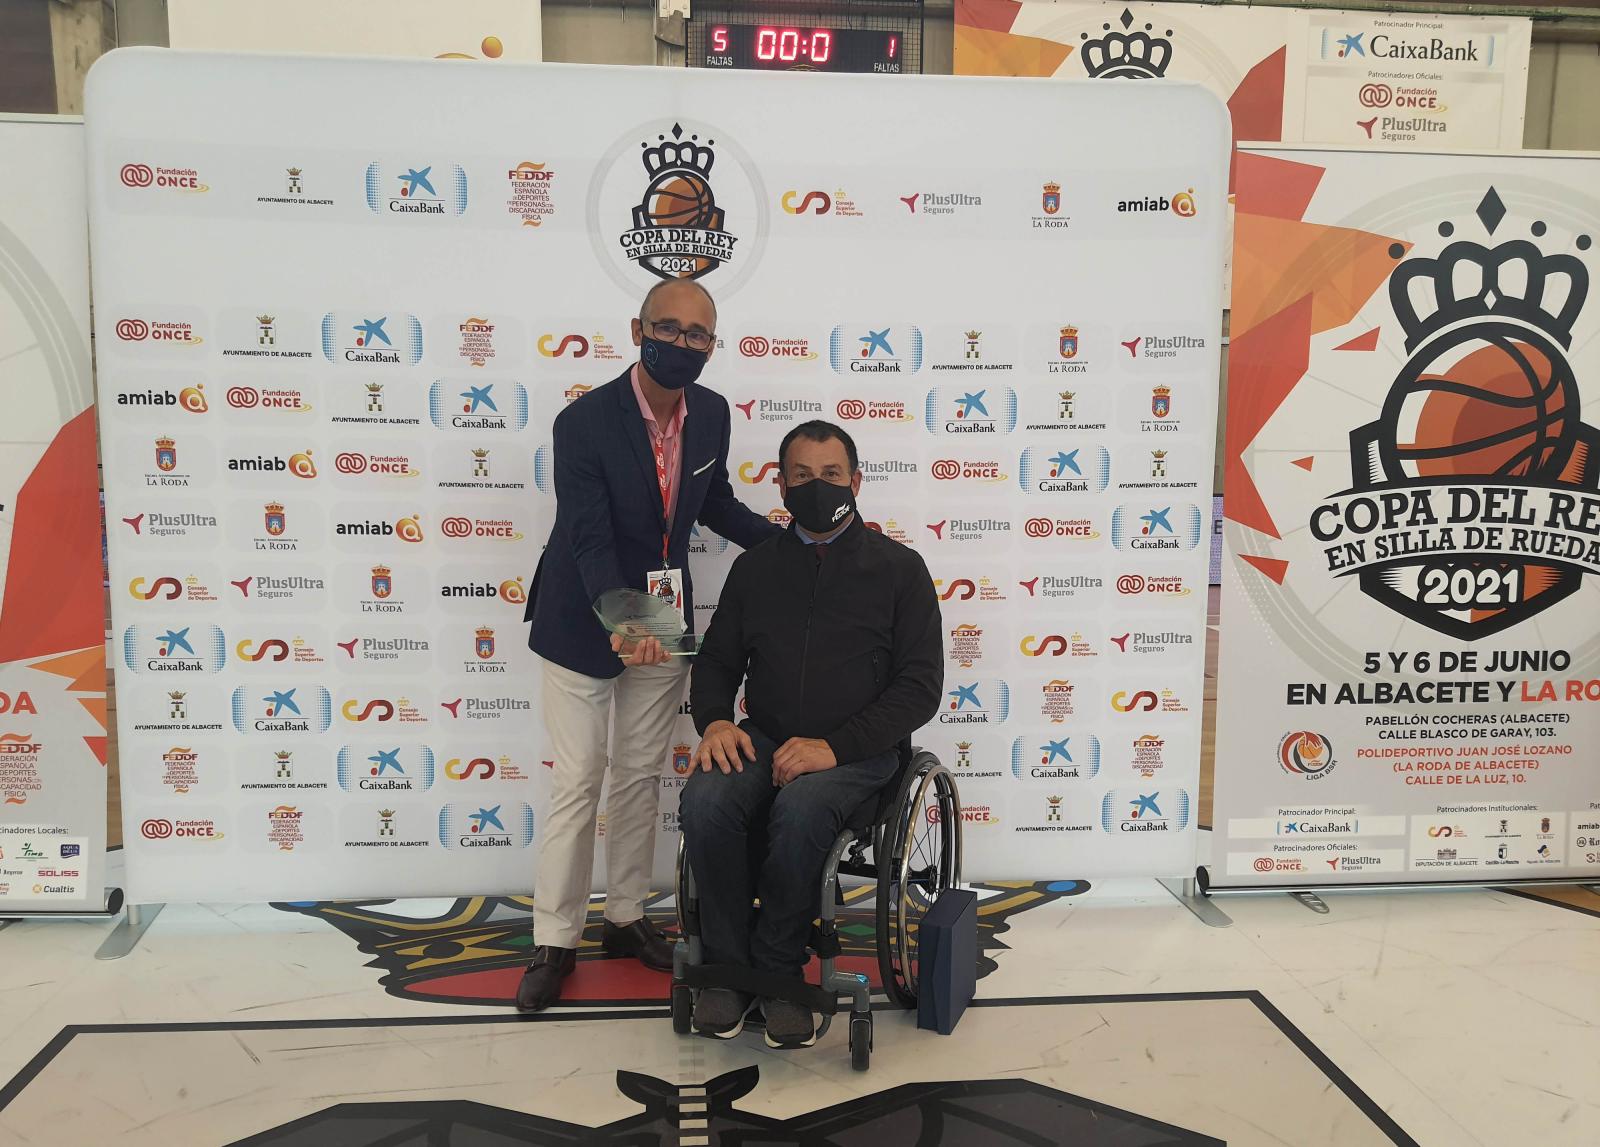 Plus Ultra Seguros reafirma el seu compromís amb l'esport adaptat i patrocina la Copa del Rei de bàsquet amb cadira de rodes